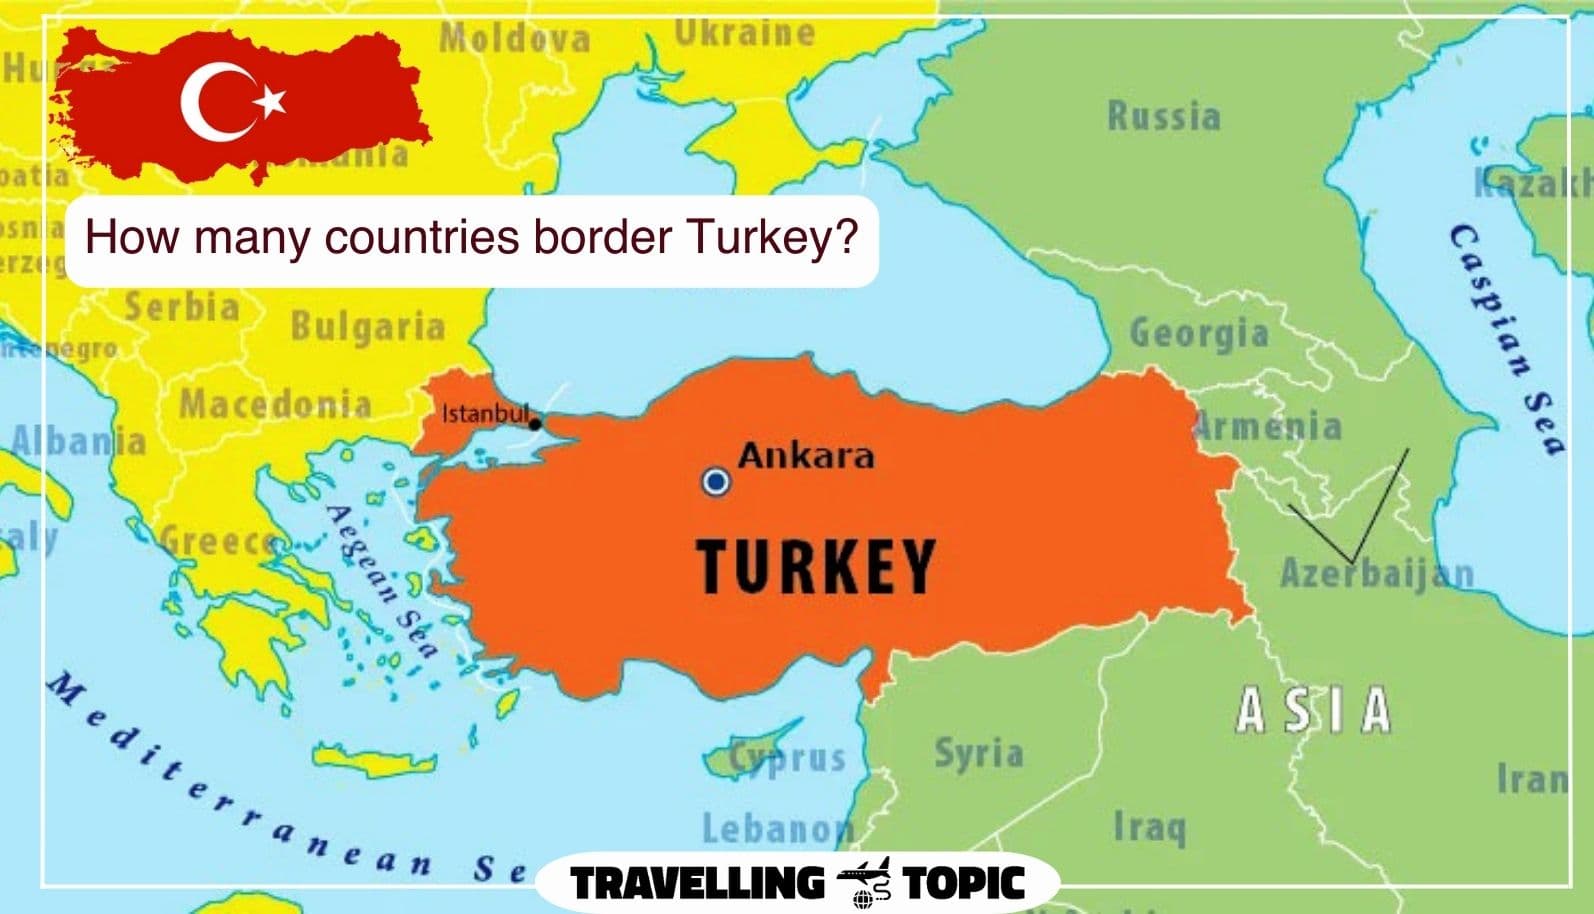 How many countries border Turkey?